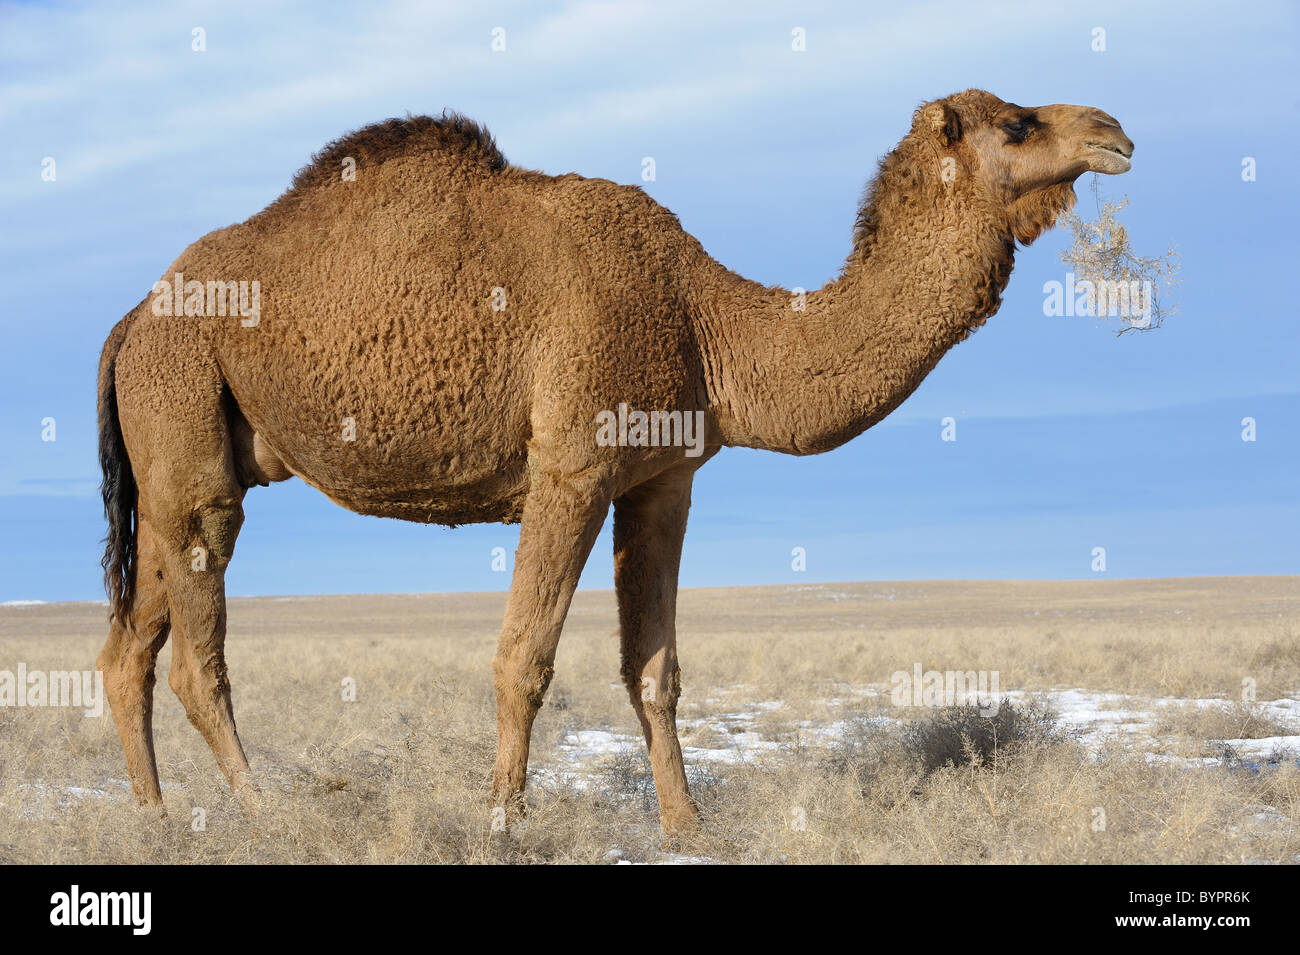 Le Dromader camel dans les steppes de l'Asie. Banque D'Images